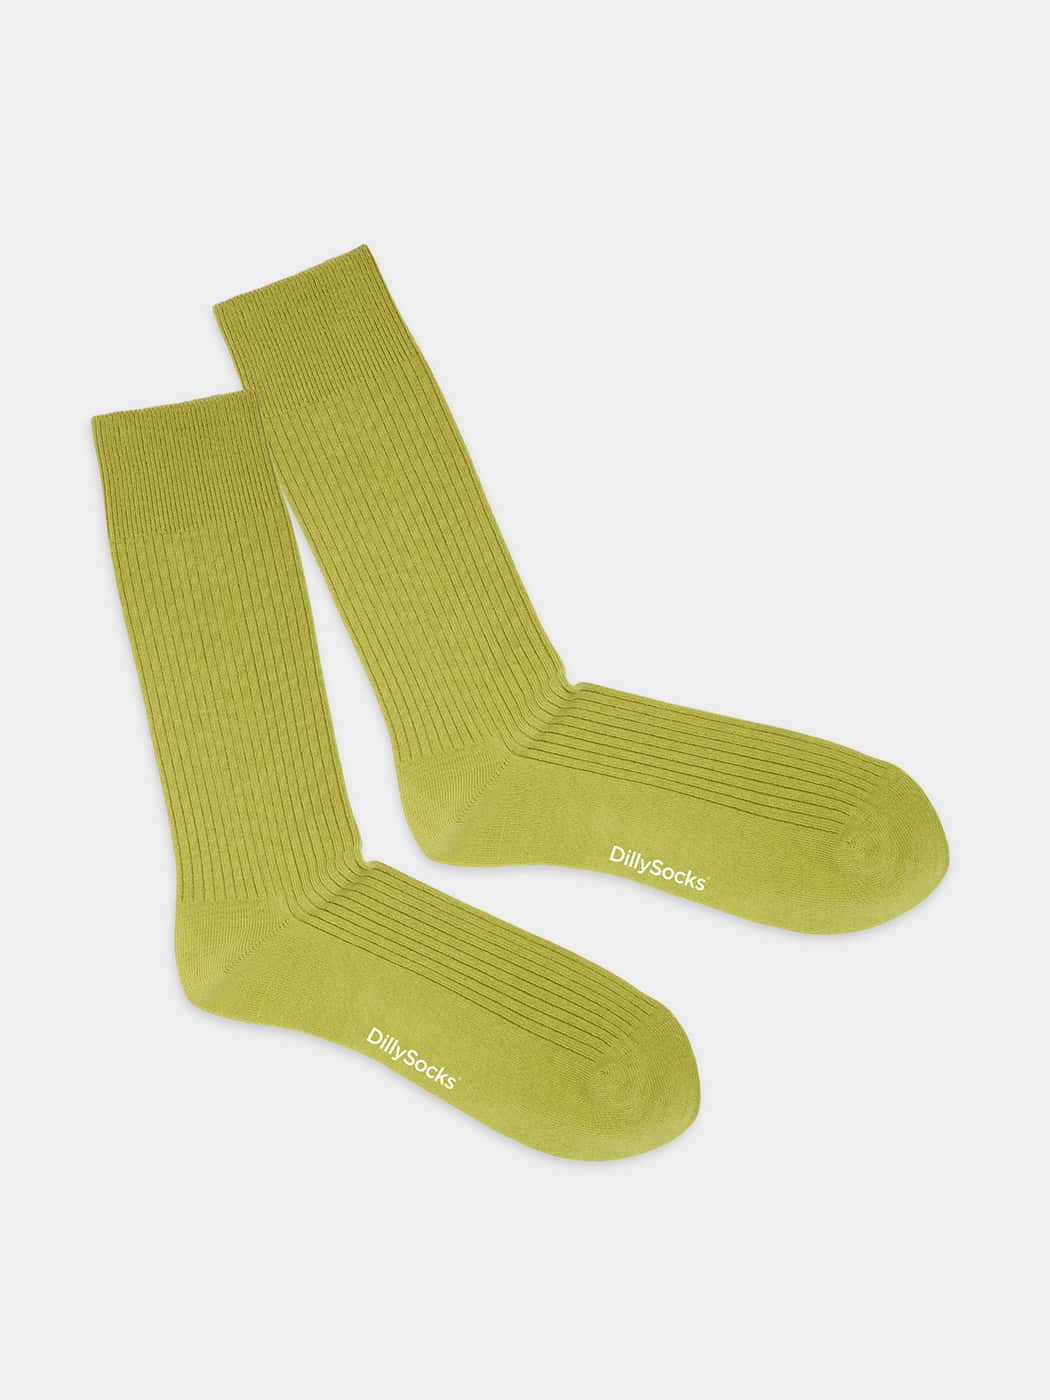 - Socken in Grün mit Uni Motiv/Muster von DillySocks